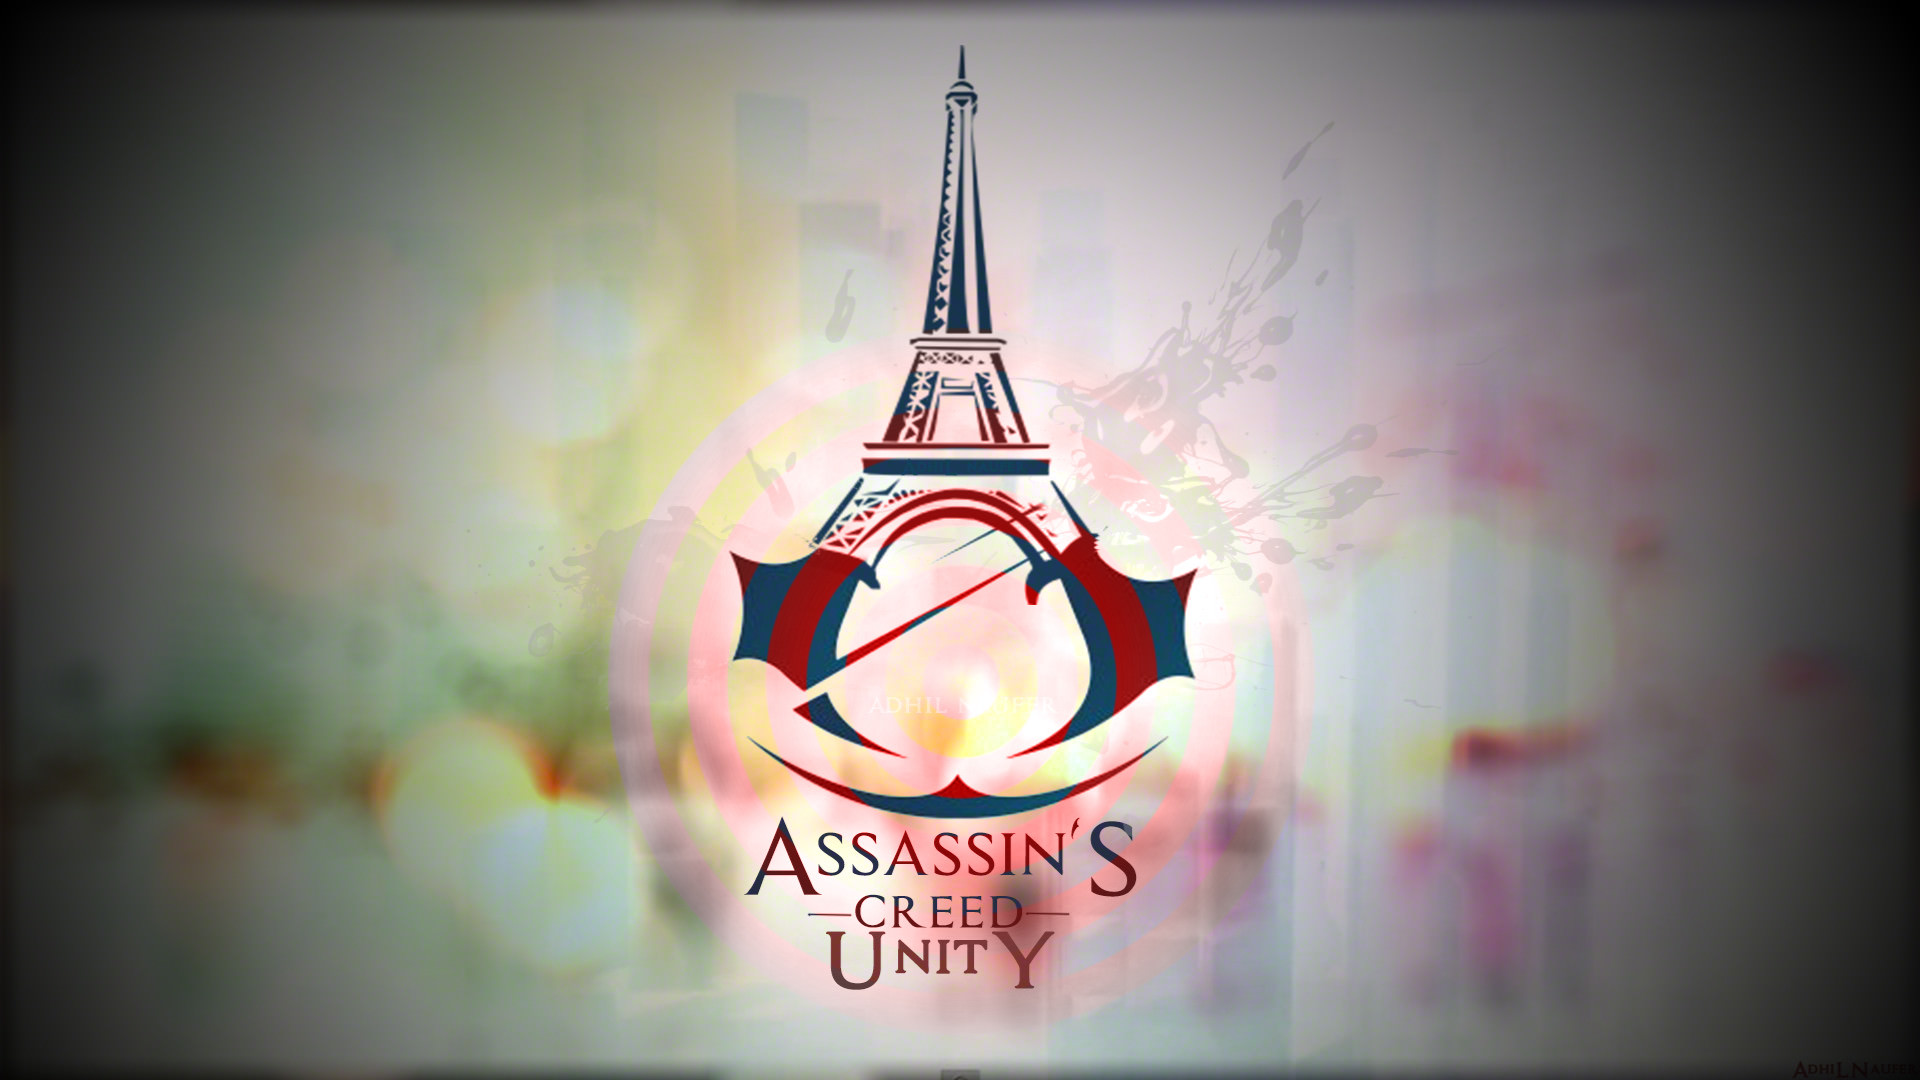 Assassins Creed Unity Logo Wallpaper Hd - HD Wallpaper 